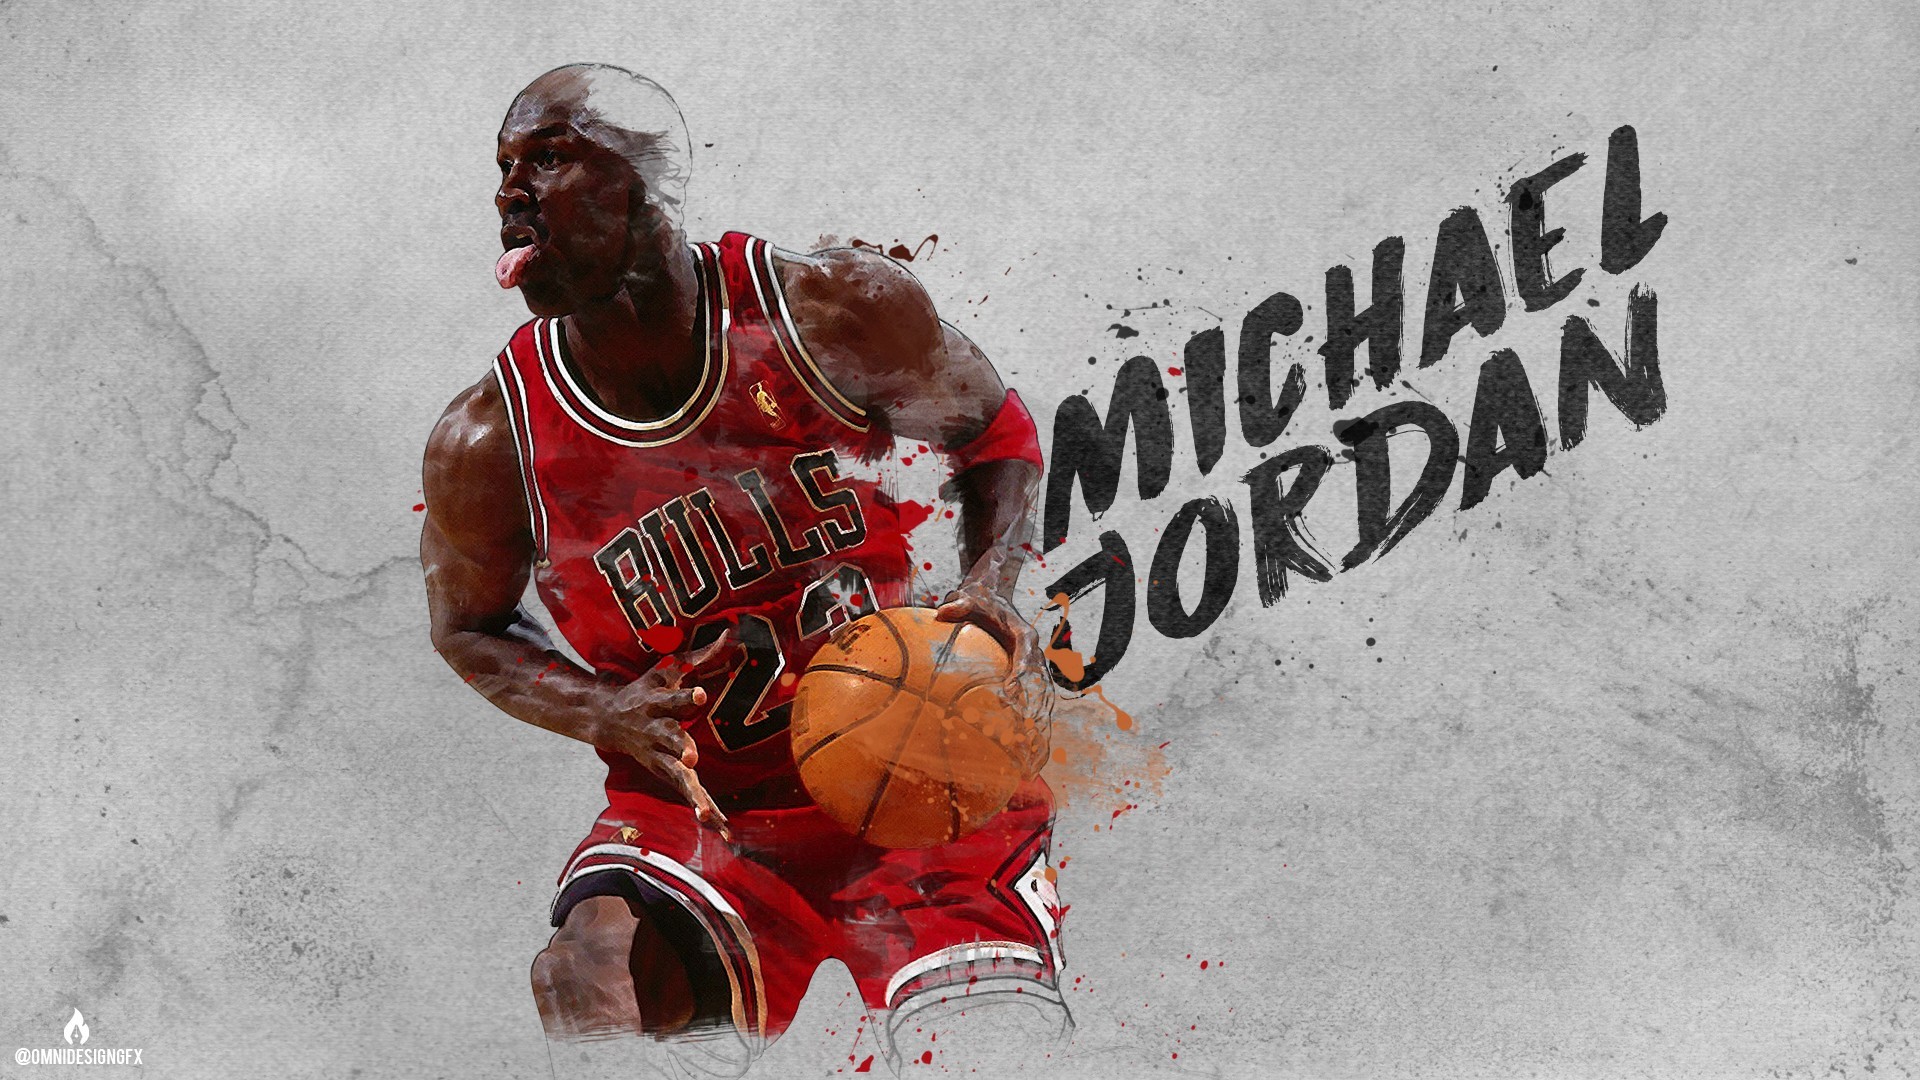 Michael Jordan Wallpaper 27 (1920×1080) • TrumpWallpapers